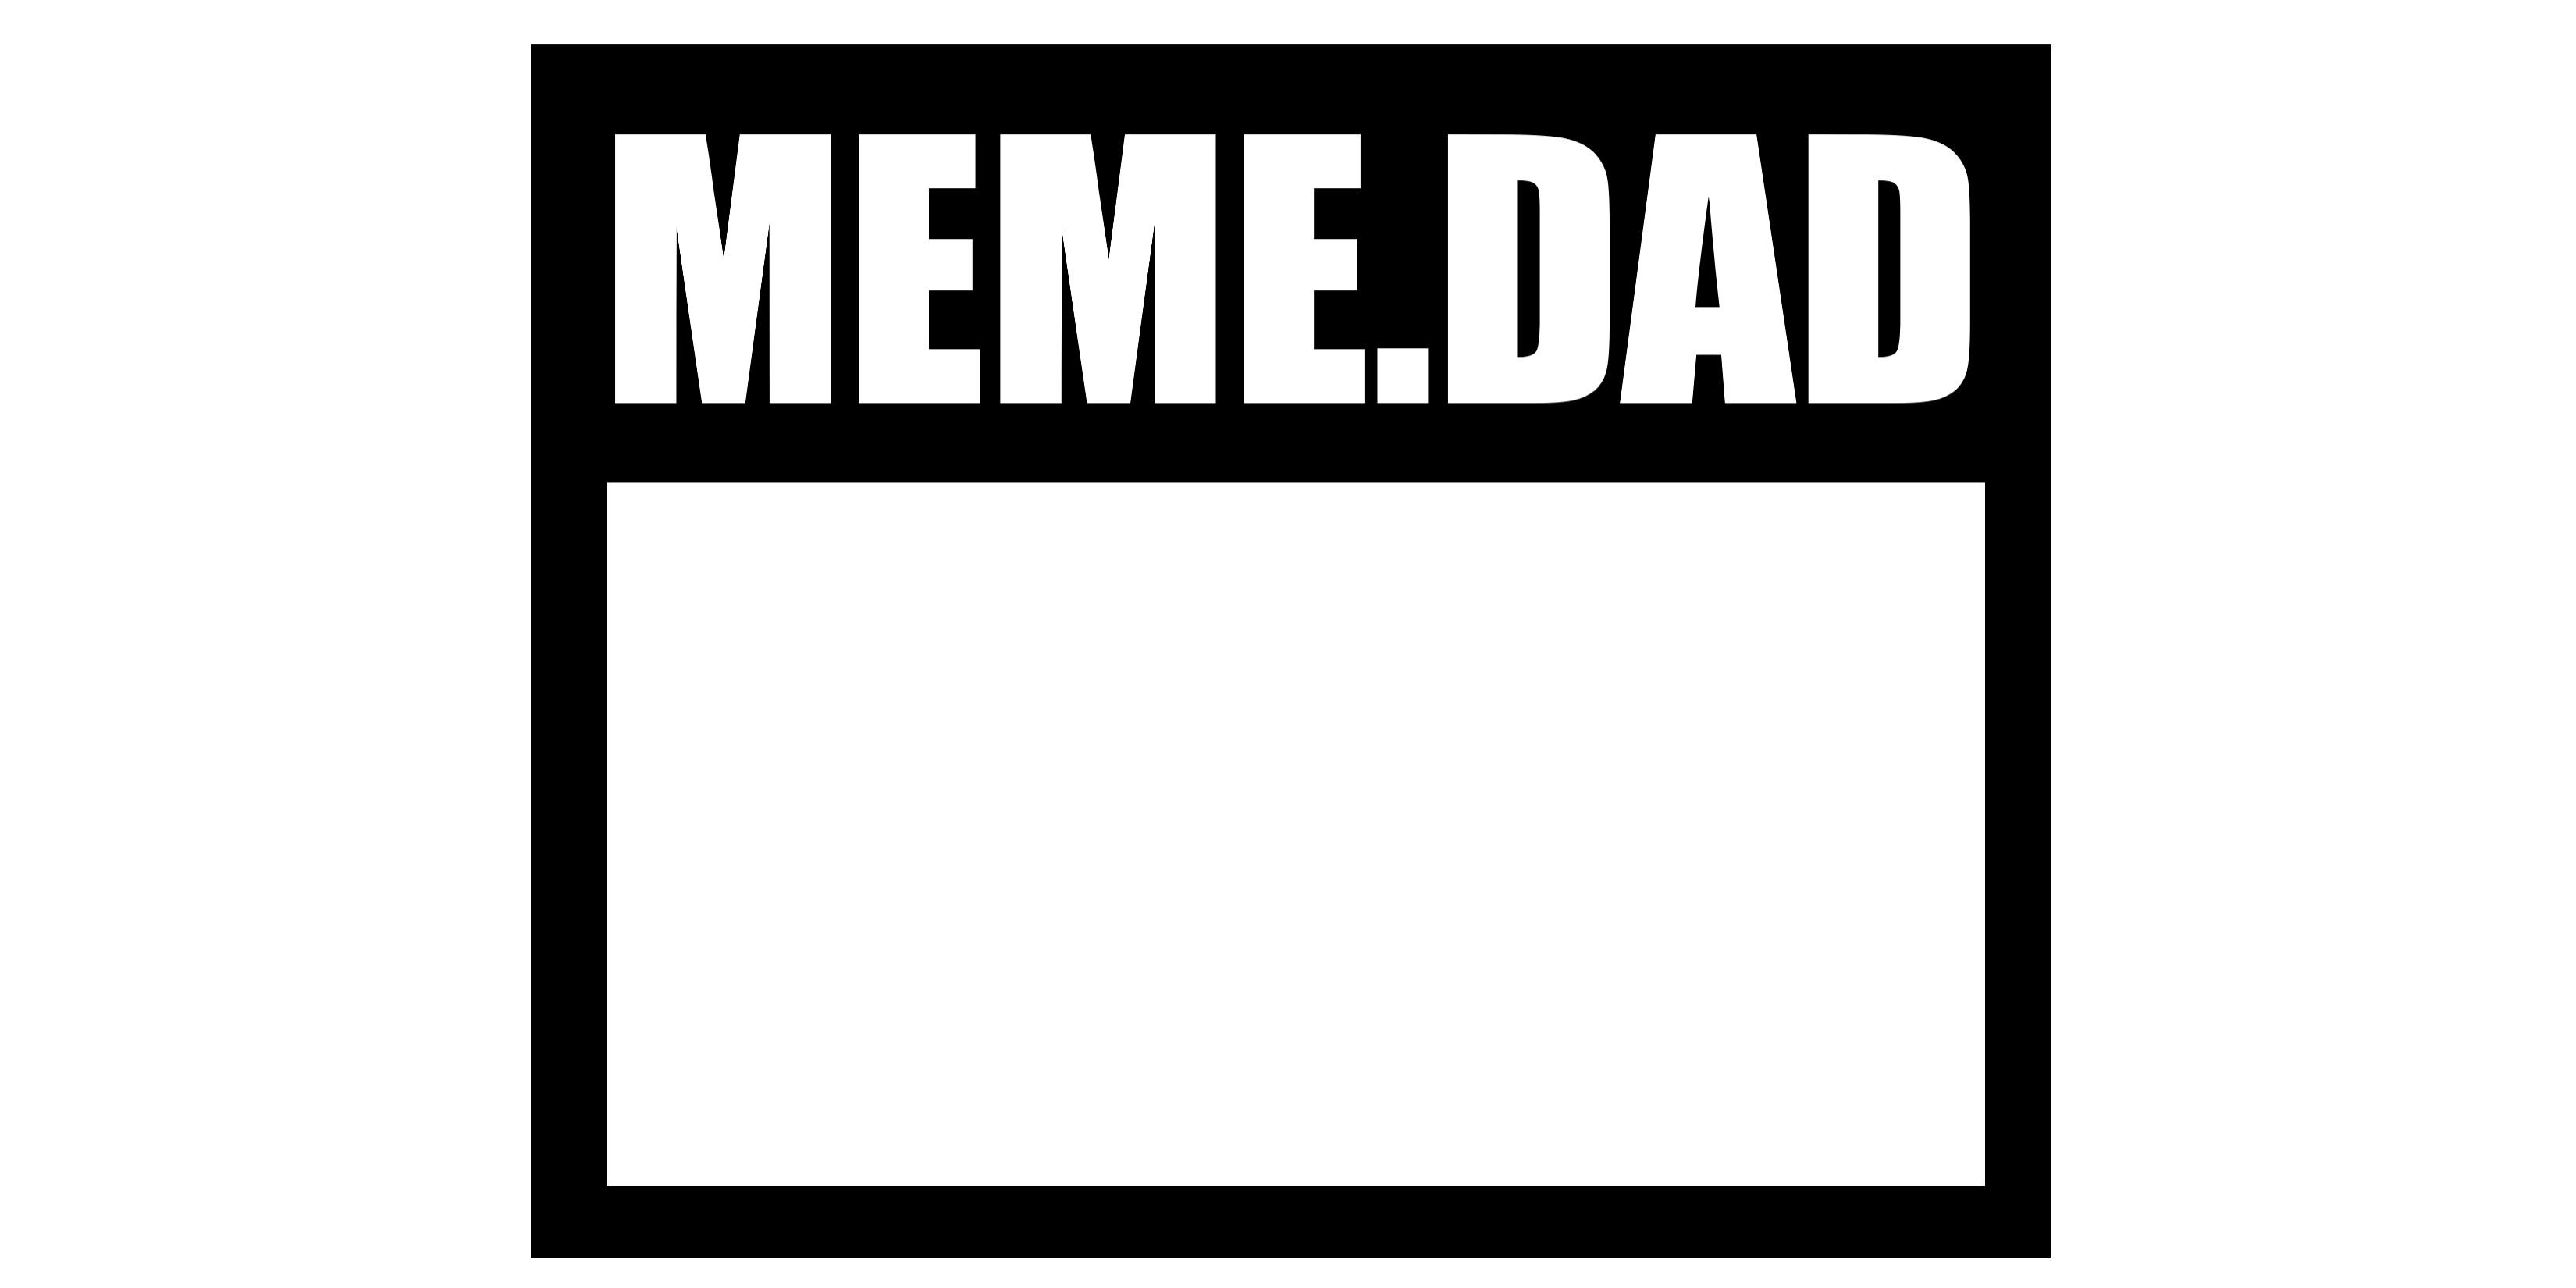 Meme.Dad logo, appreciation for dad duties.